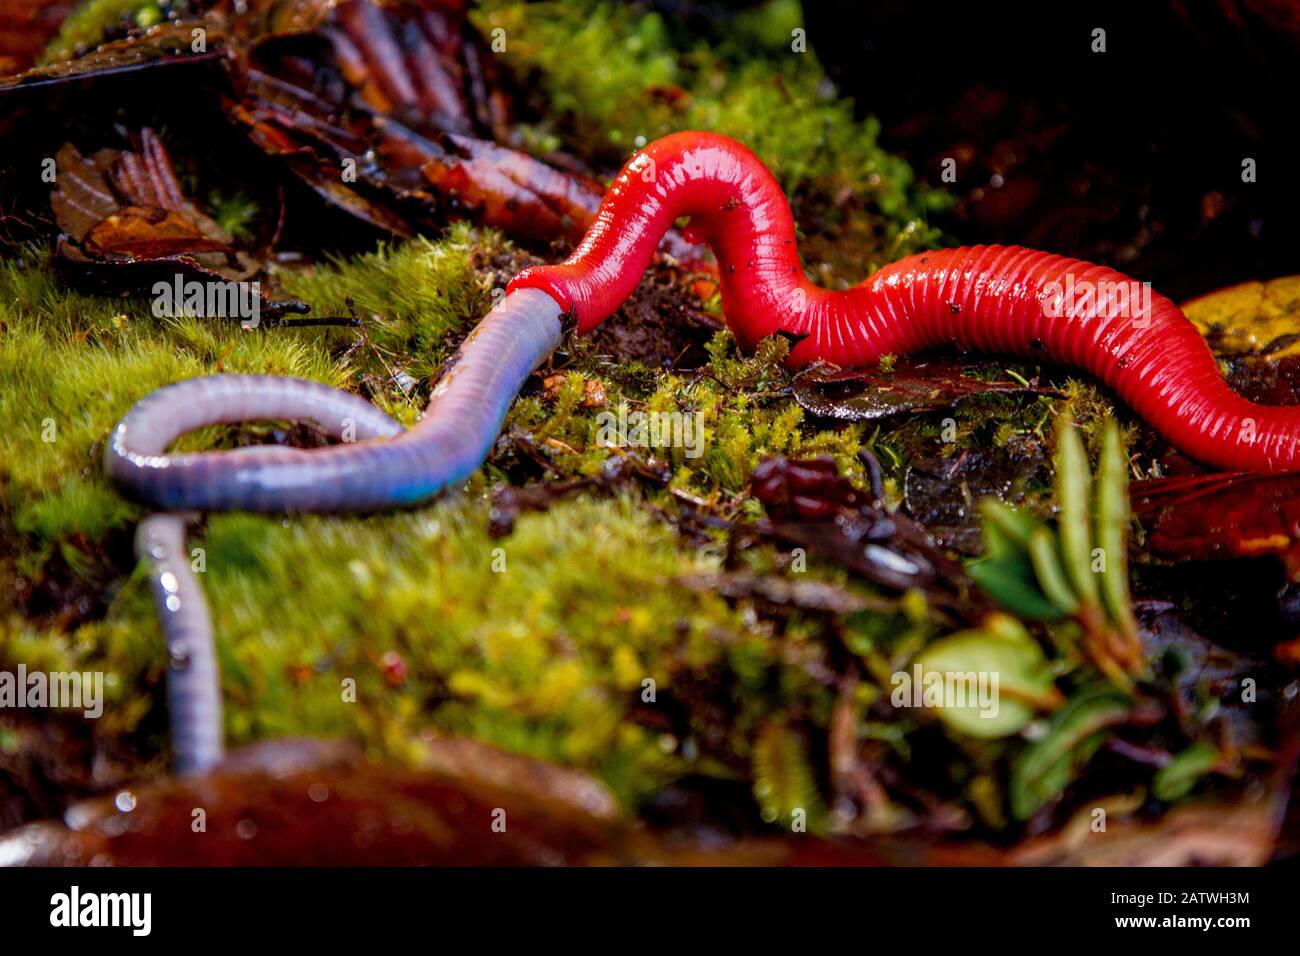 Kinabalu Leech rouge géant (Mimobdella buettikoferi) se nourrissant du ver de terre géant Kinabalu (Pheretima darnleiensis), du mont Kinabalu, Bornéo. Banque D'Images